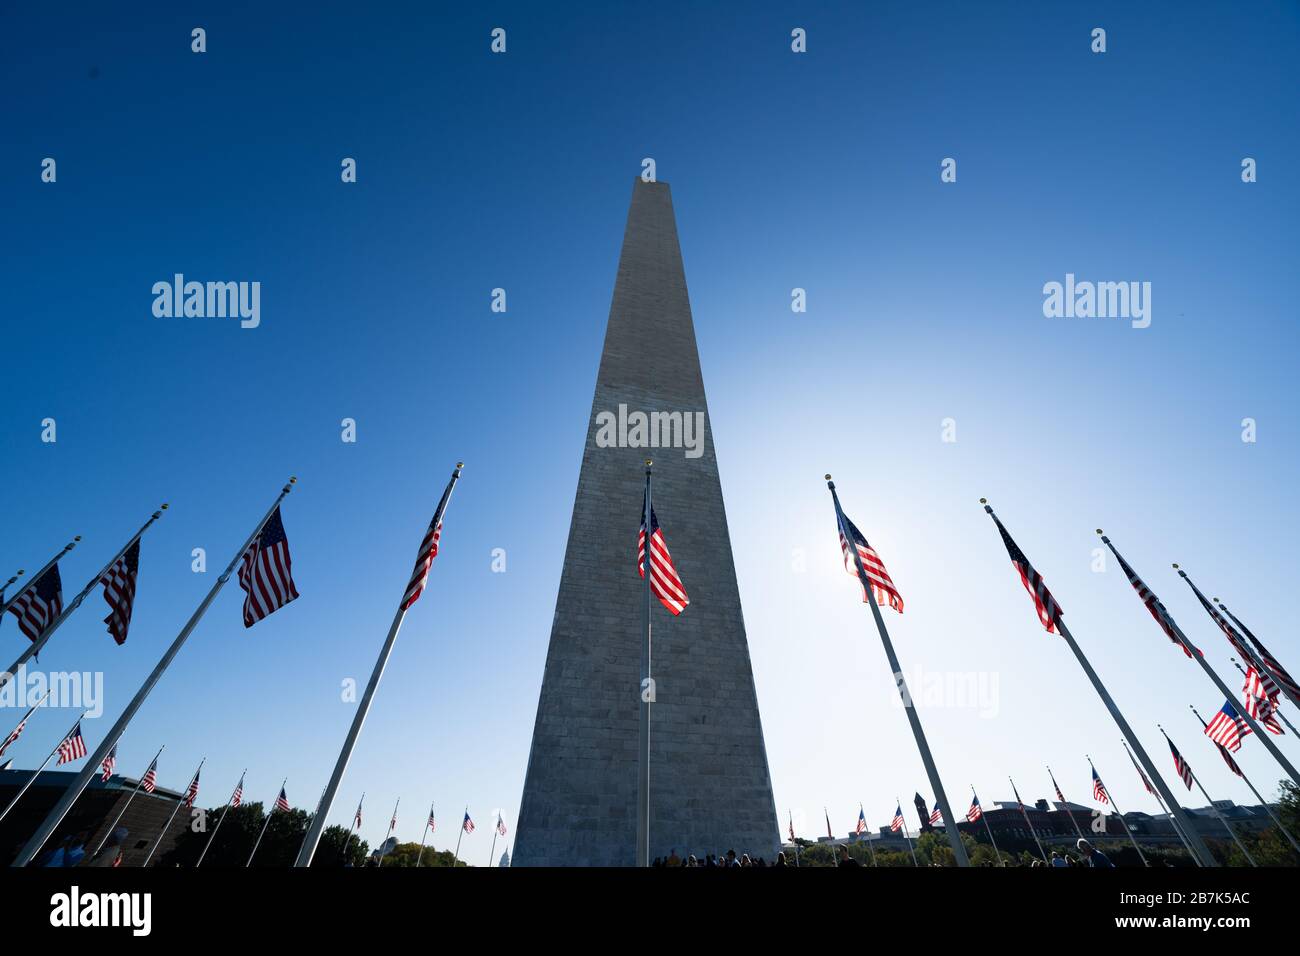 WASHINGTON, DC - le Washington Monument se trouve au milieu du National Mall à Washington DC. Il commémore George Washington, le premier président des États-Unis, et à près de 170 mètres de haut est l'obélisque le plus haut du monde. Banque D'Images